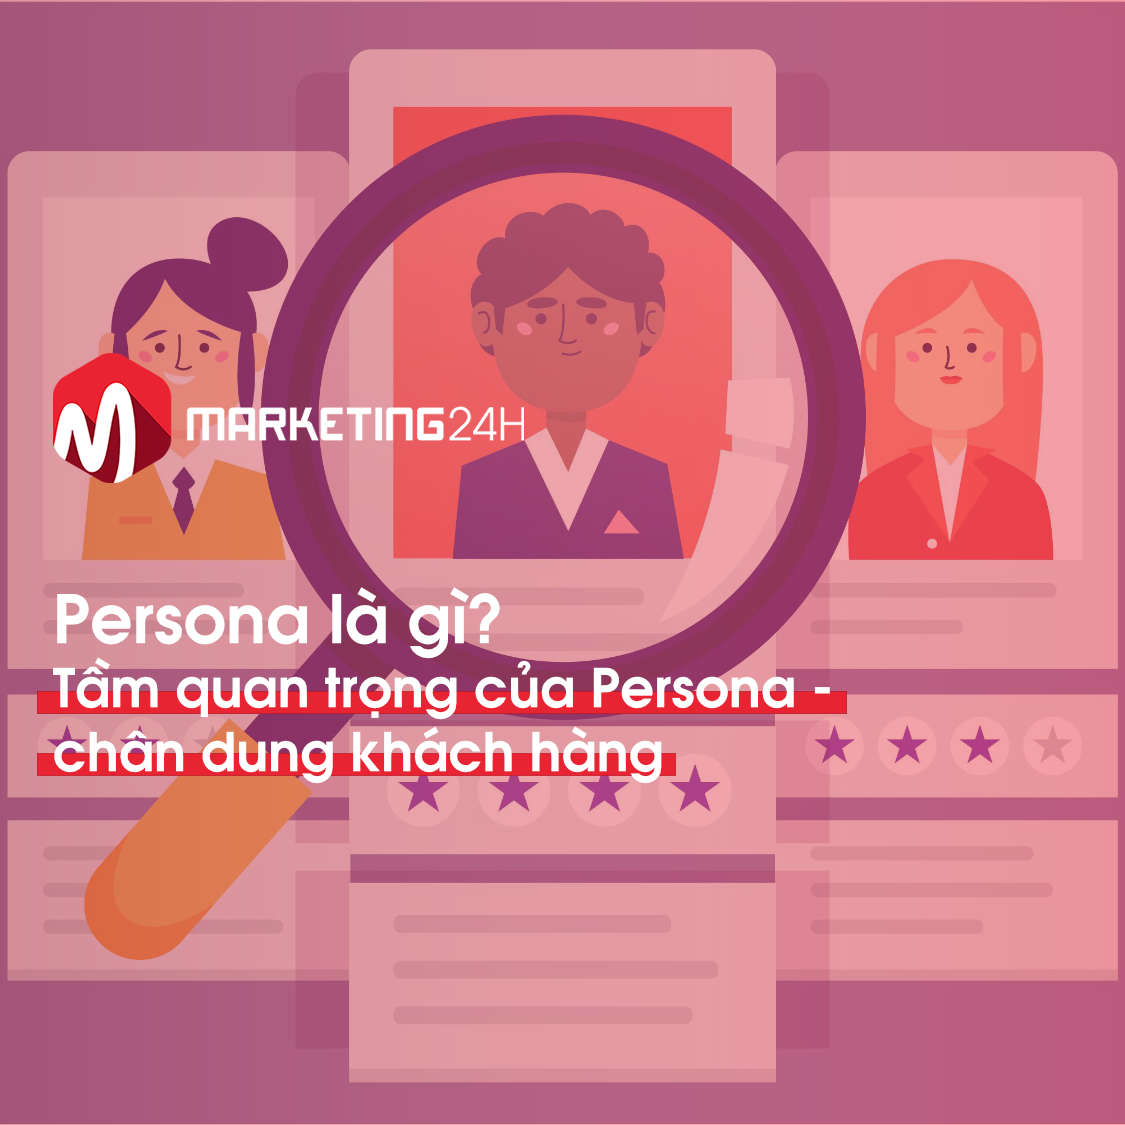 Persona-la-gi-Marketing24h.vn